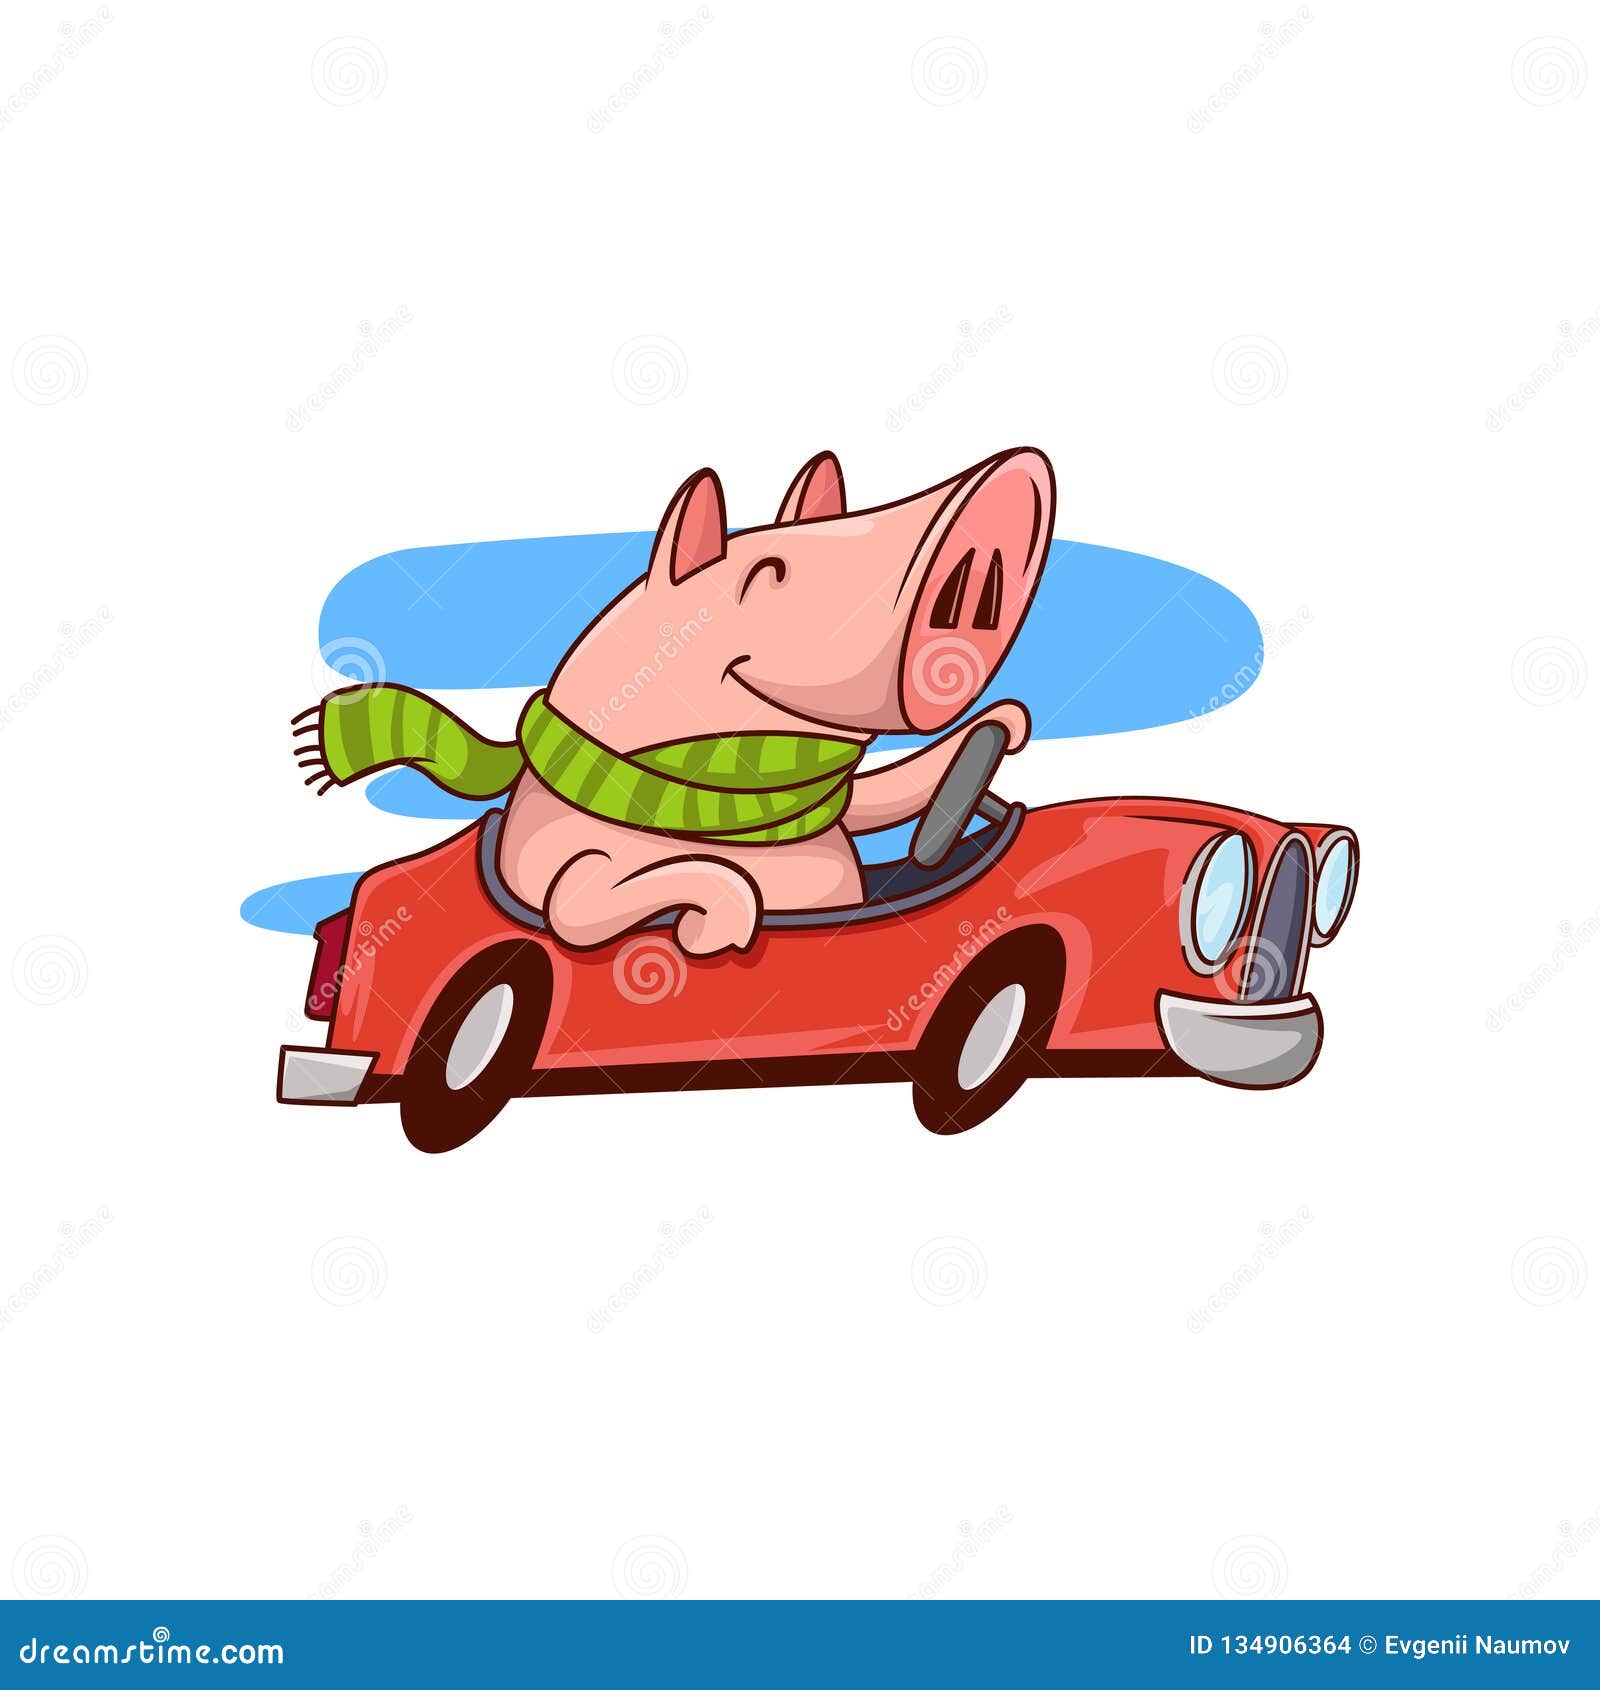 Едет на свинье. Свинья на красной машине. Хрюшка едет на машинке. Свинка едет на машинке.